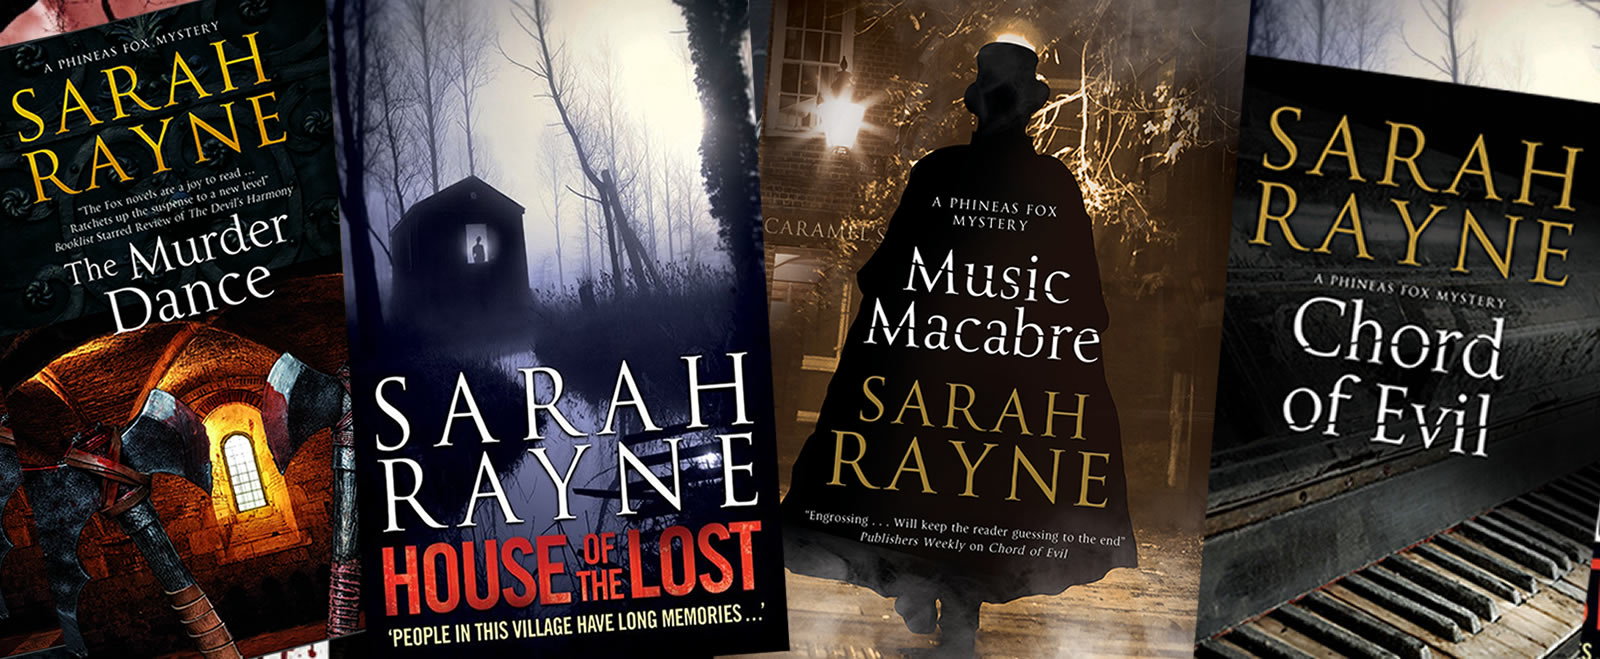 Books by Sarah Rayne